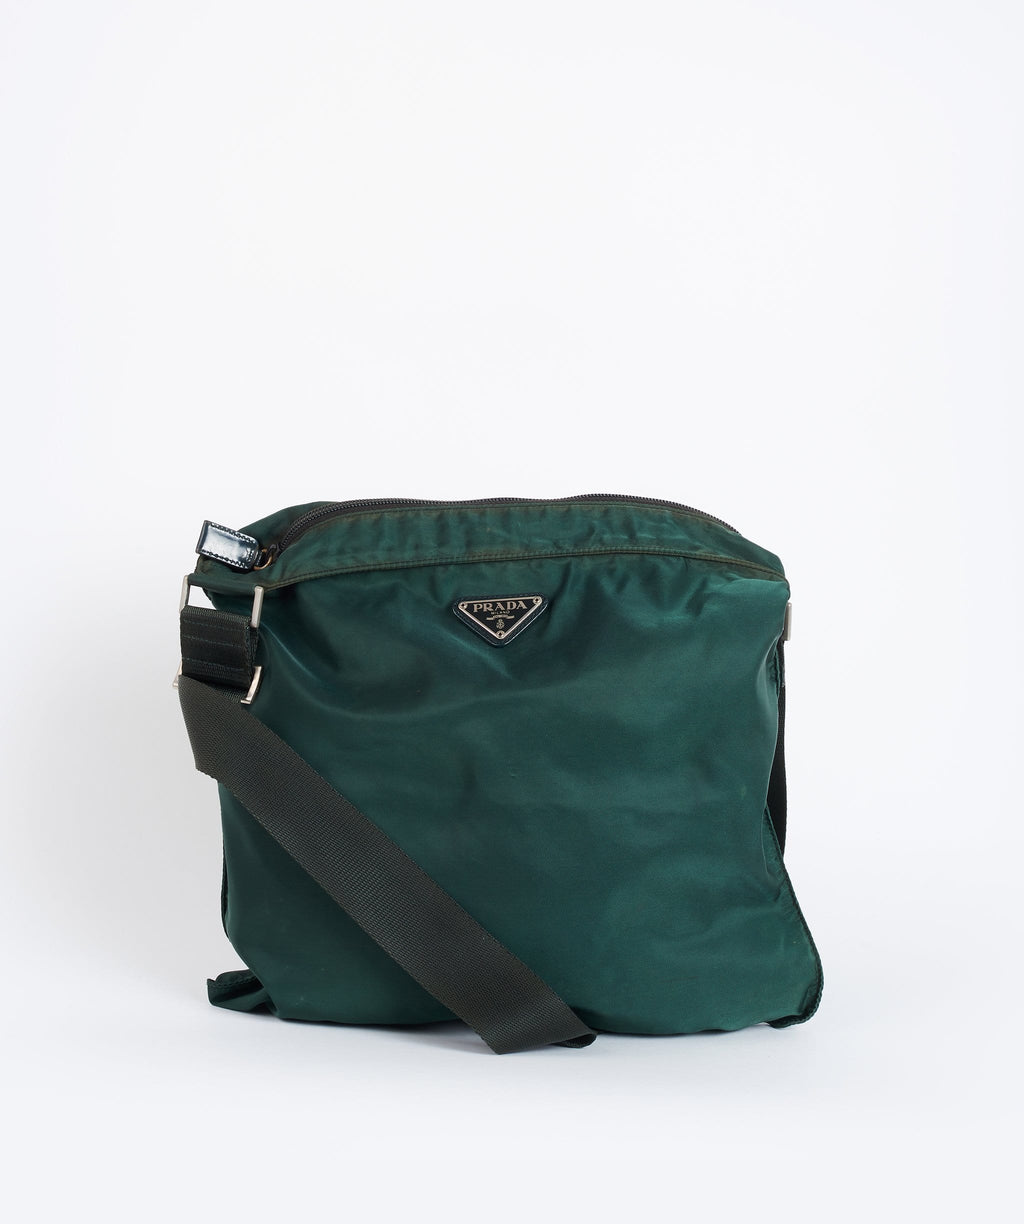 Prada Saffiano Cuir Double Bag, Green (Verde) | Bags, Prada saffiano, Tote  bag